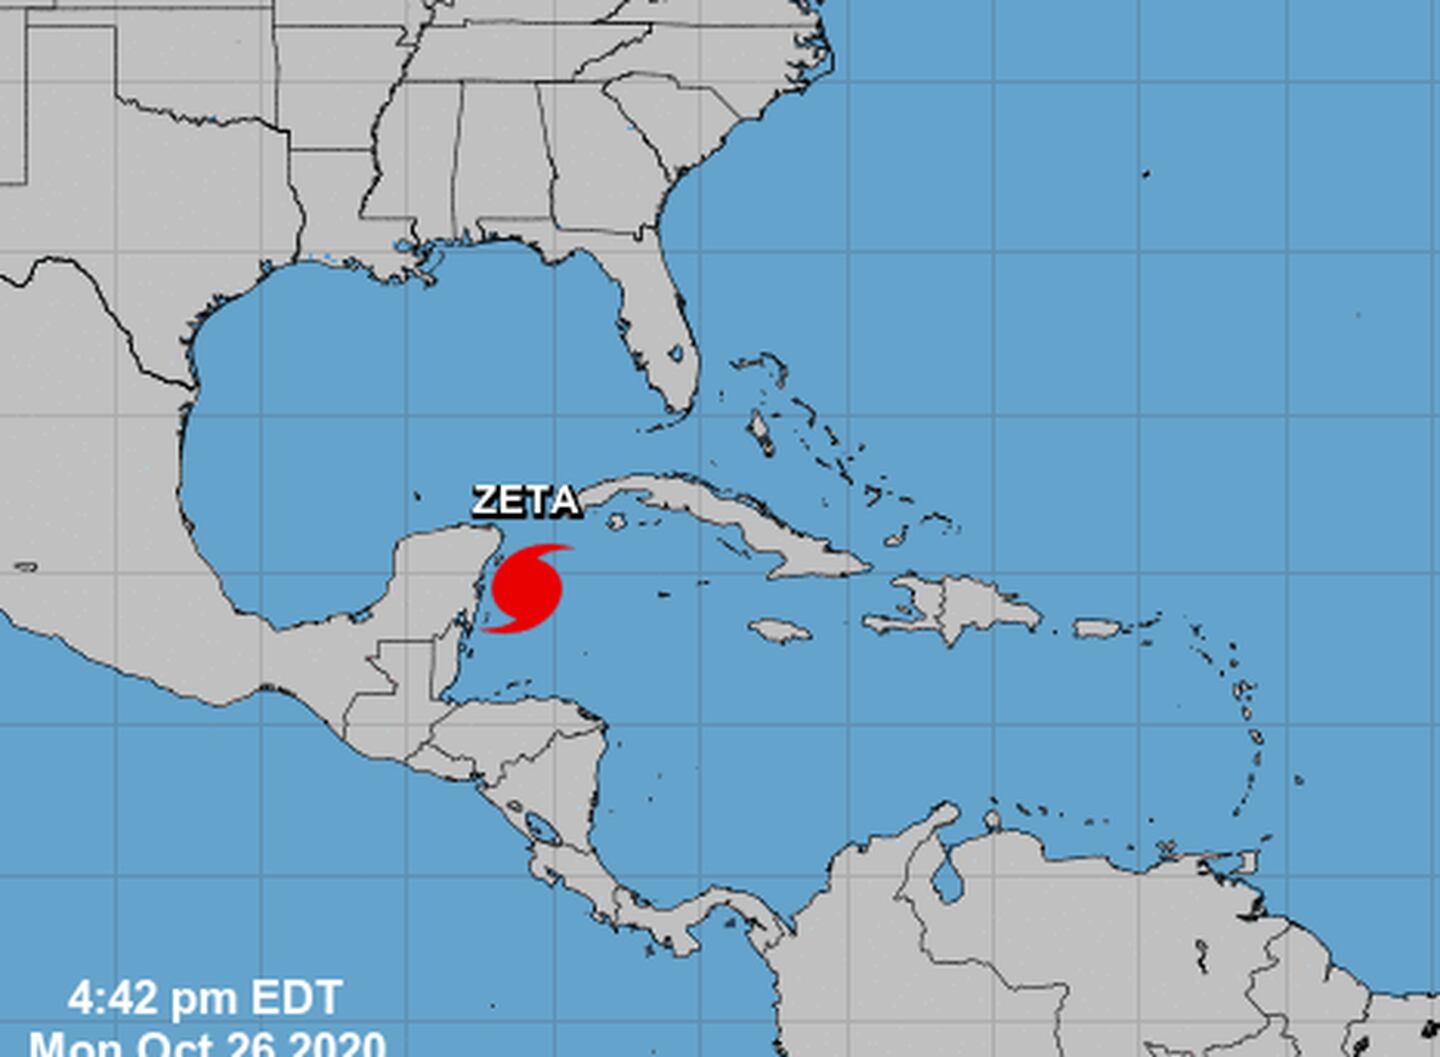 Al formarse el huracán Zeta, la actual temporada igualó en cantidad de ciclones a la del 2005, que tenía el récord histórico. A la presente temporada todavía le faltan 35 días. Imagen: Centro Nal. de Huracanes.